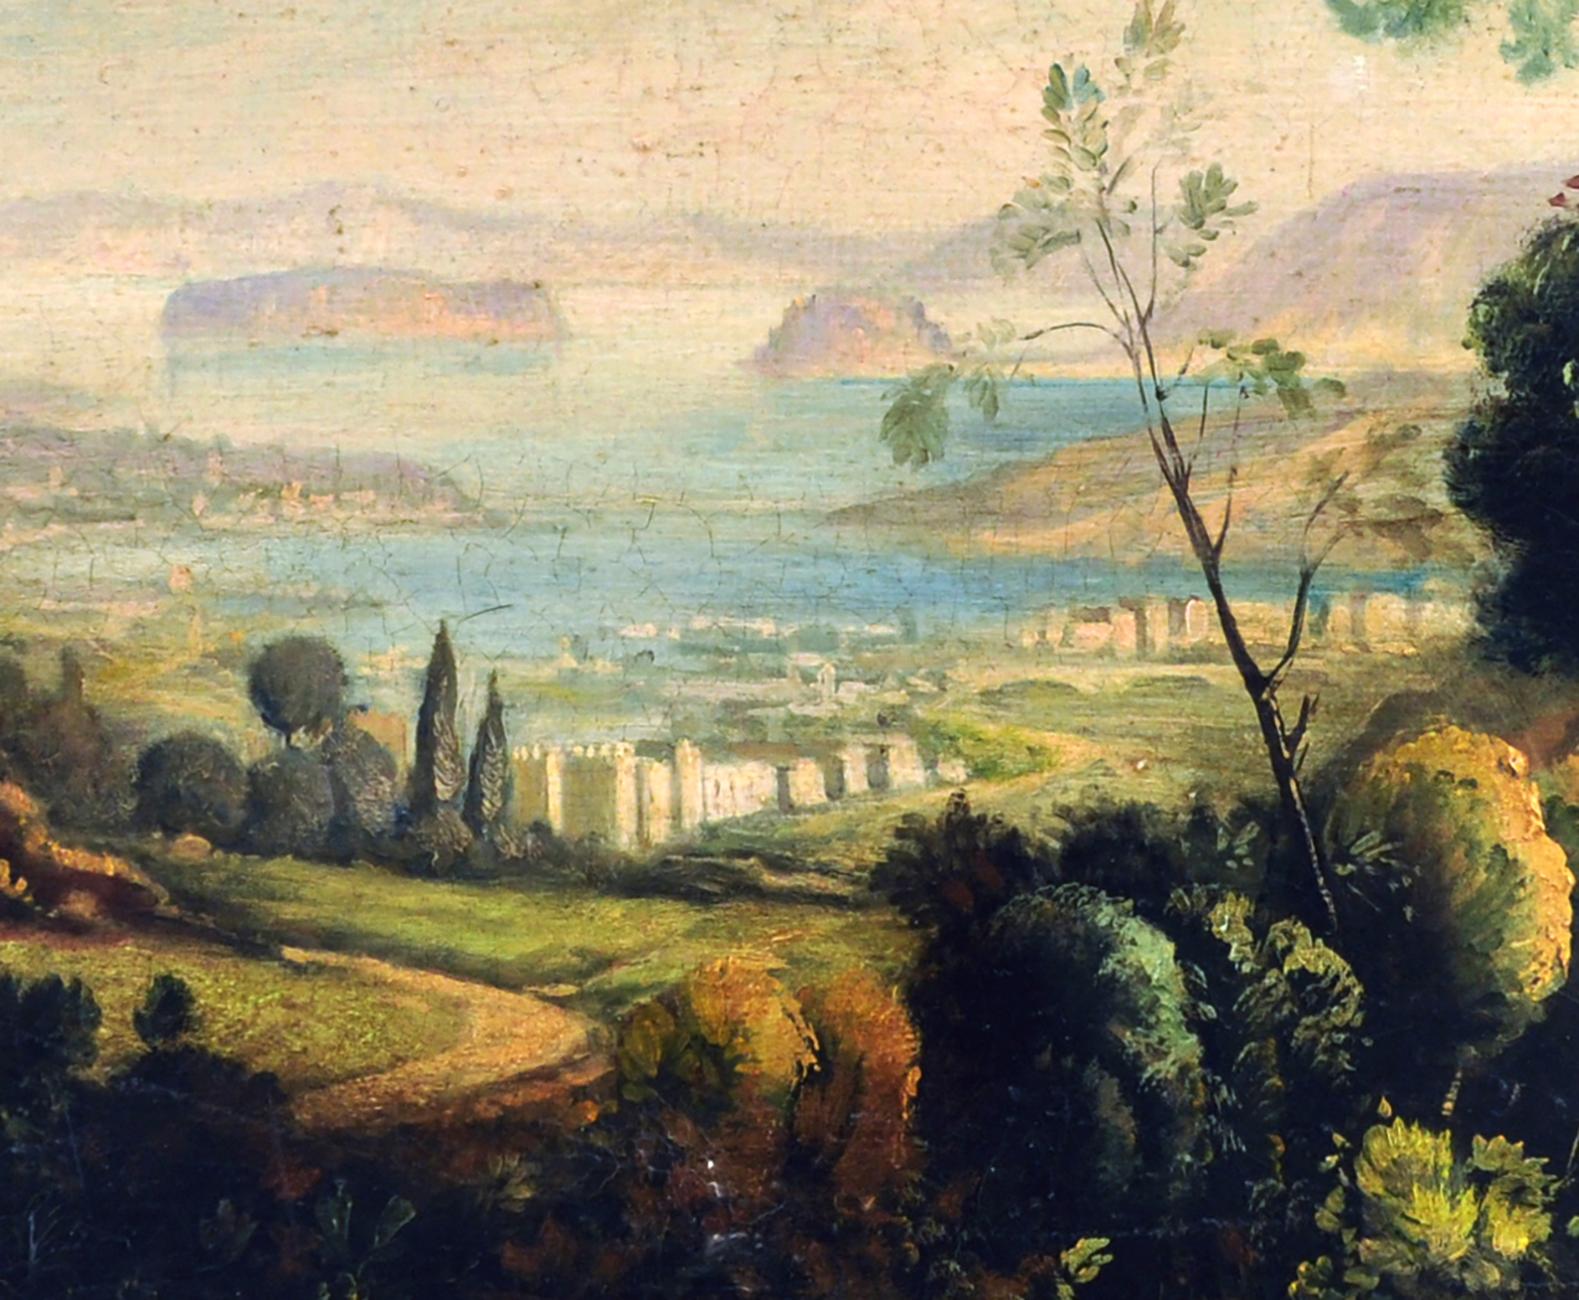 LANDESCAPE -École française - Peinture de paysage italienne à l'huile sur toile - Marron Landscape Painting par Luigi De Santis